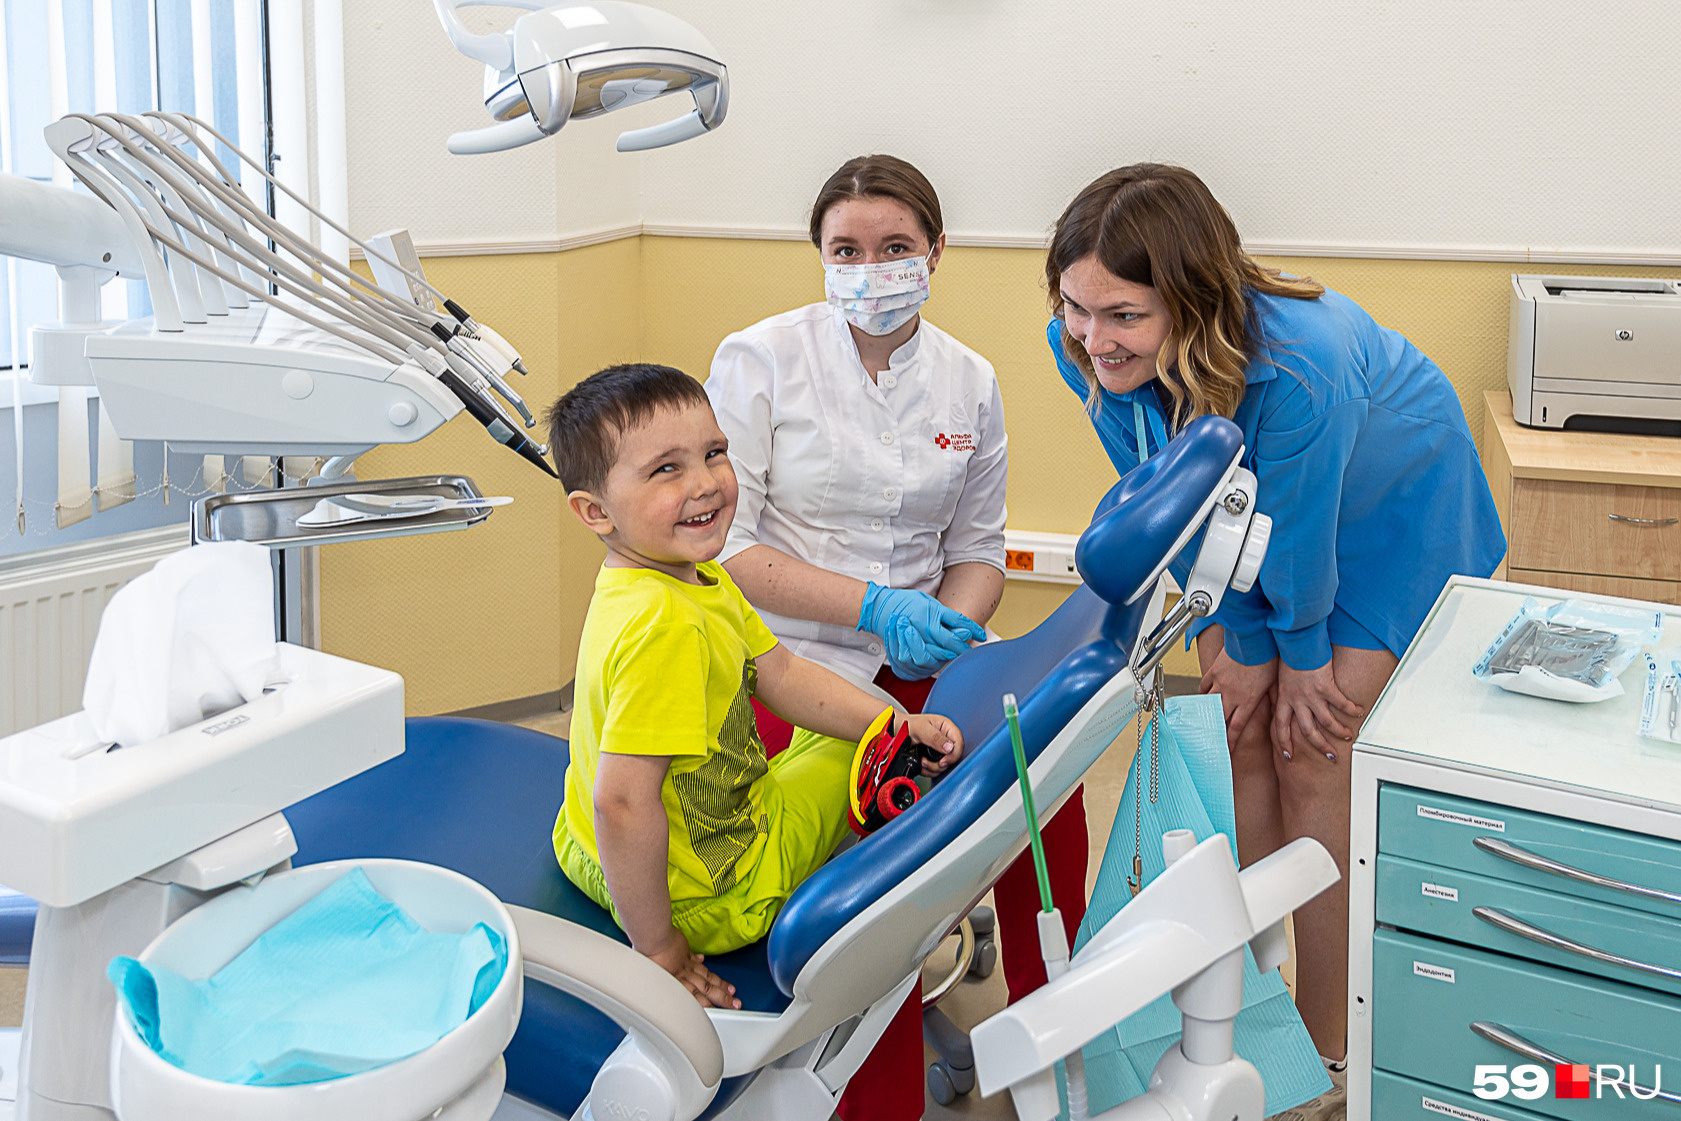 Для маленьких пациентов важна поддержка родителей и их пример — если мама с папой ухаживают за своими зубами, то ребенок будет спокойнее относиться к стоматологам